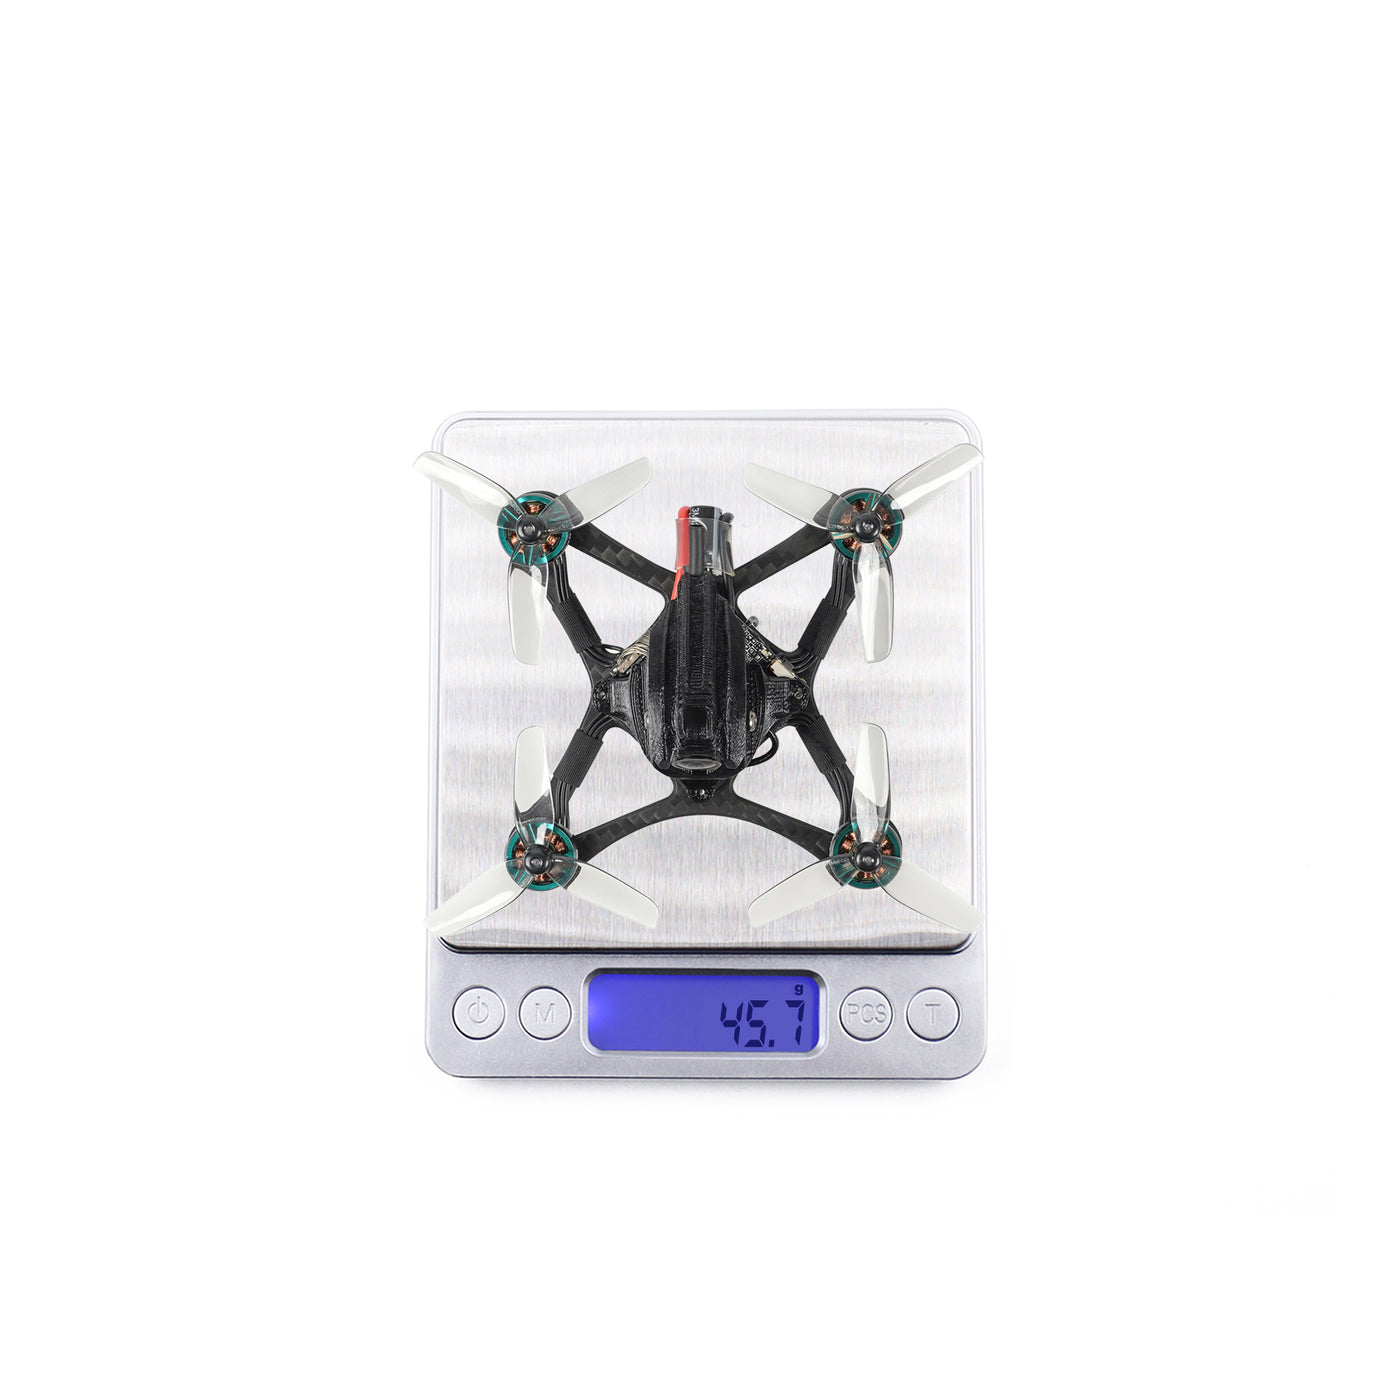 Sub250 Nanofly20 2S 2“ New Upgraded Walksnail Avatar 1S Mini FPV Drone